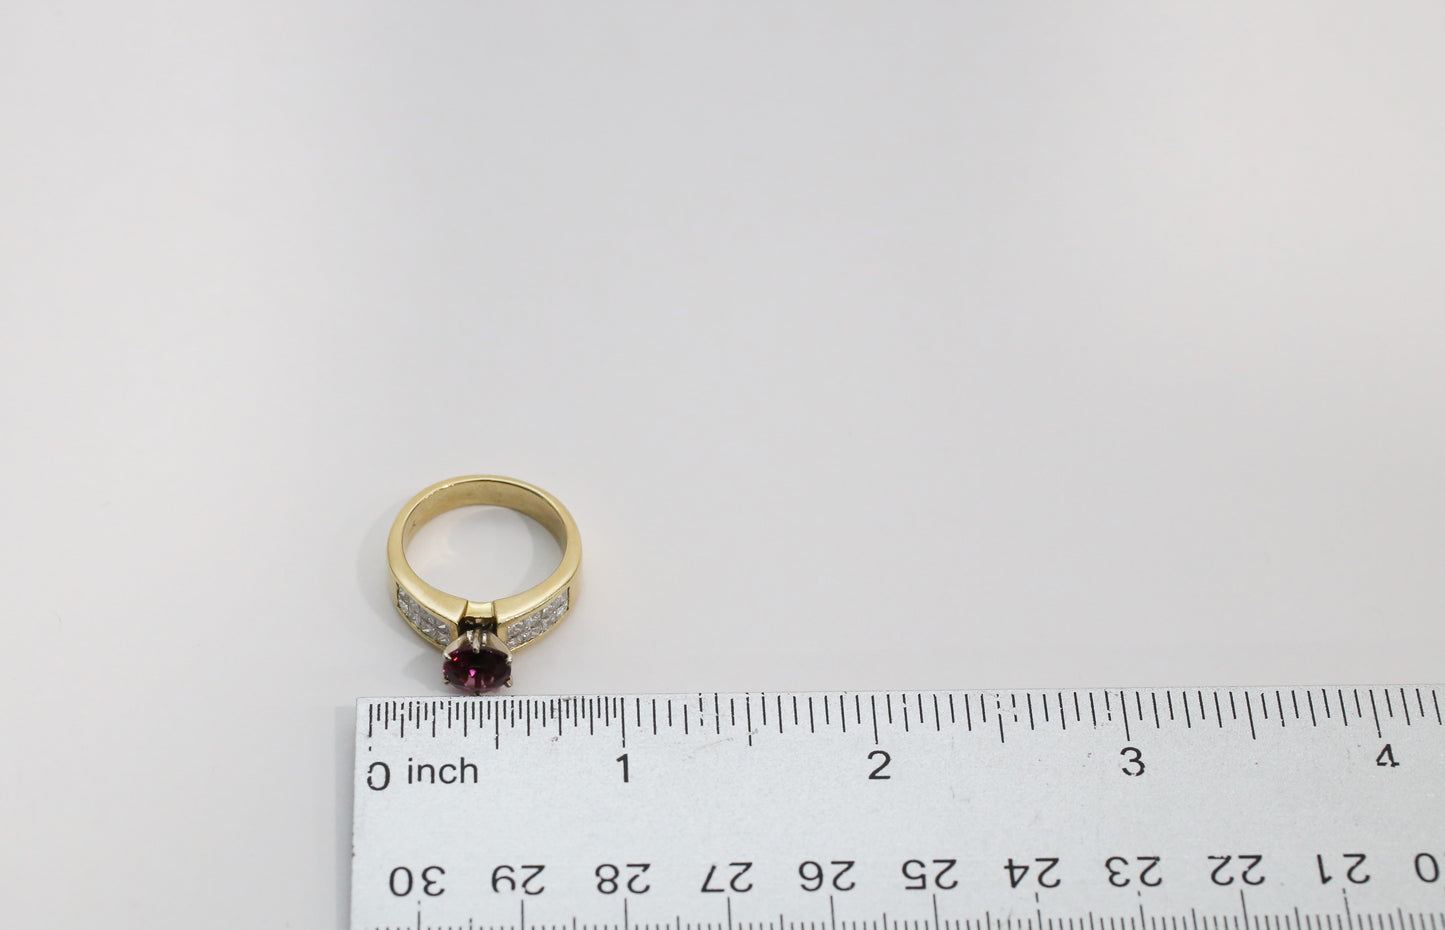 18k Yellow Gold Tourmaline & Diamond Ring, Size 6.5 - 7.8g